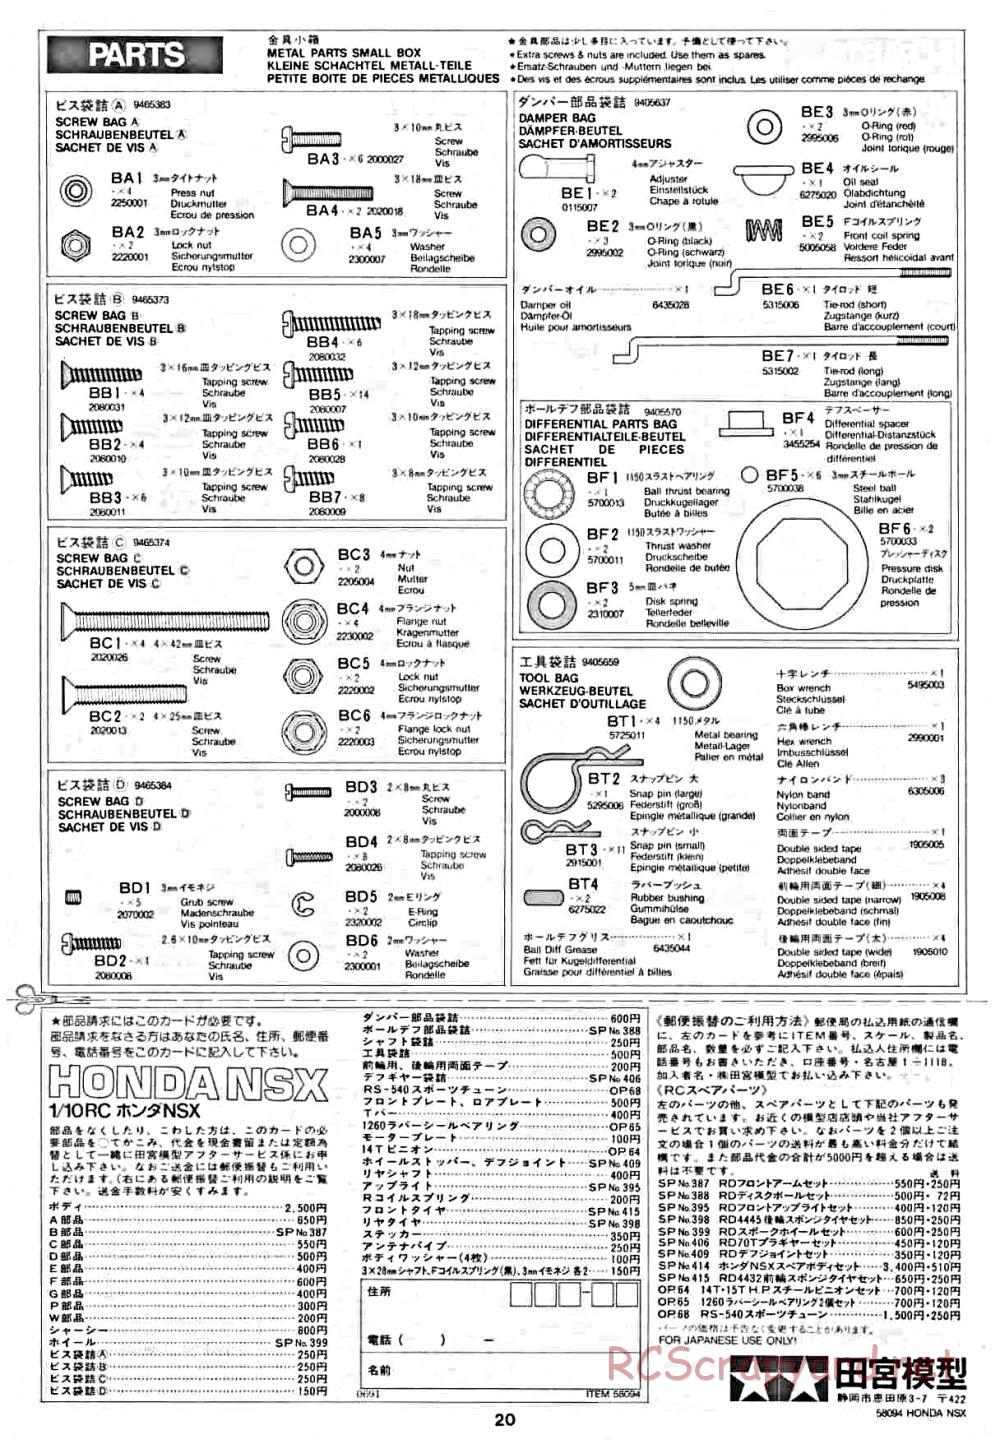 Tamiya - Honda NSX - 58094 - Manual - Page 20